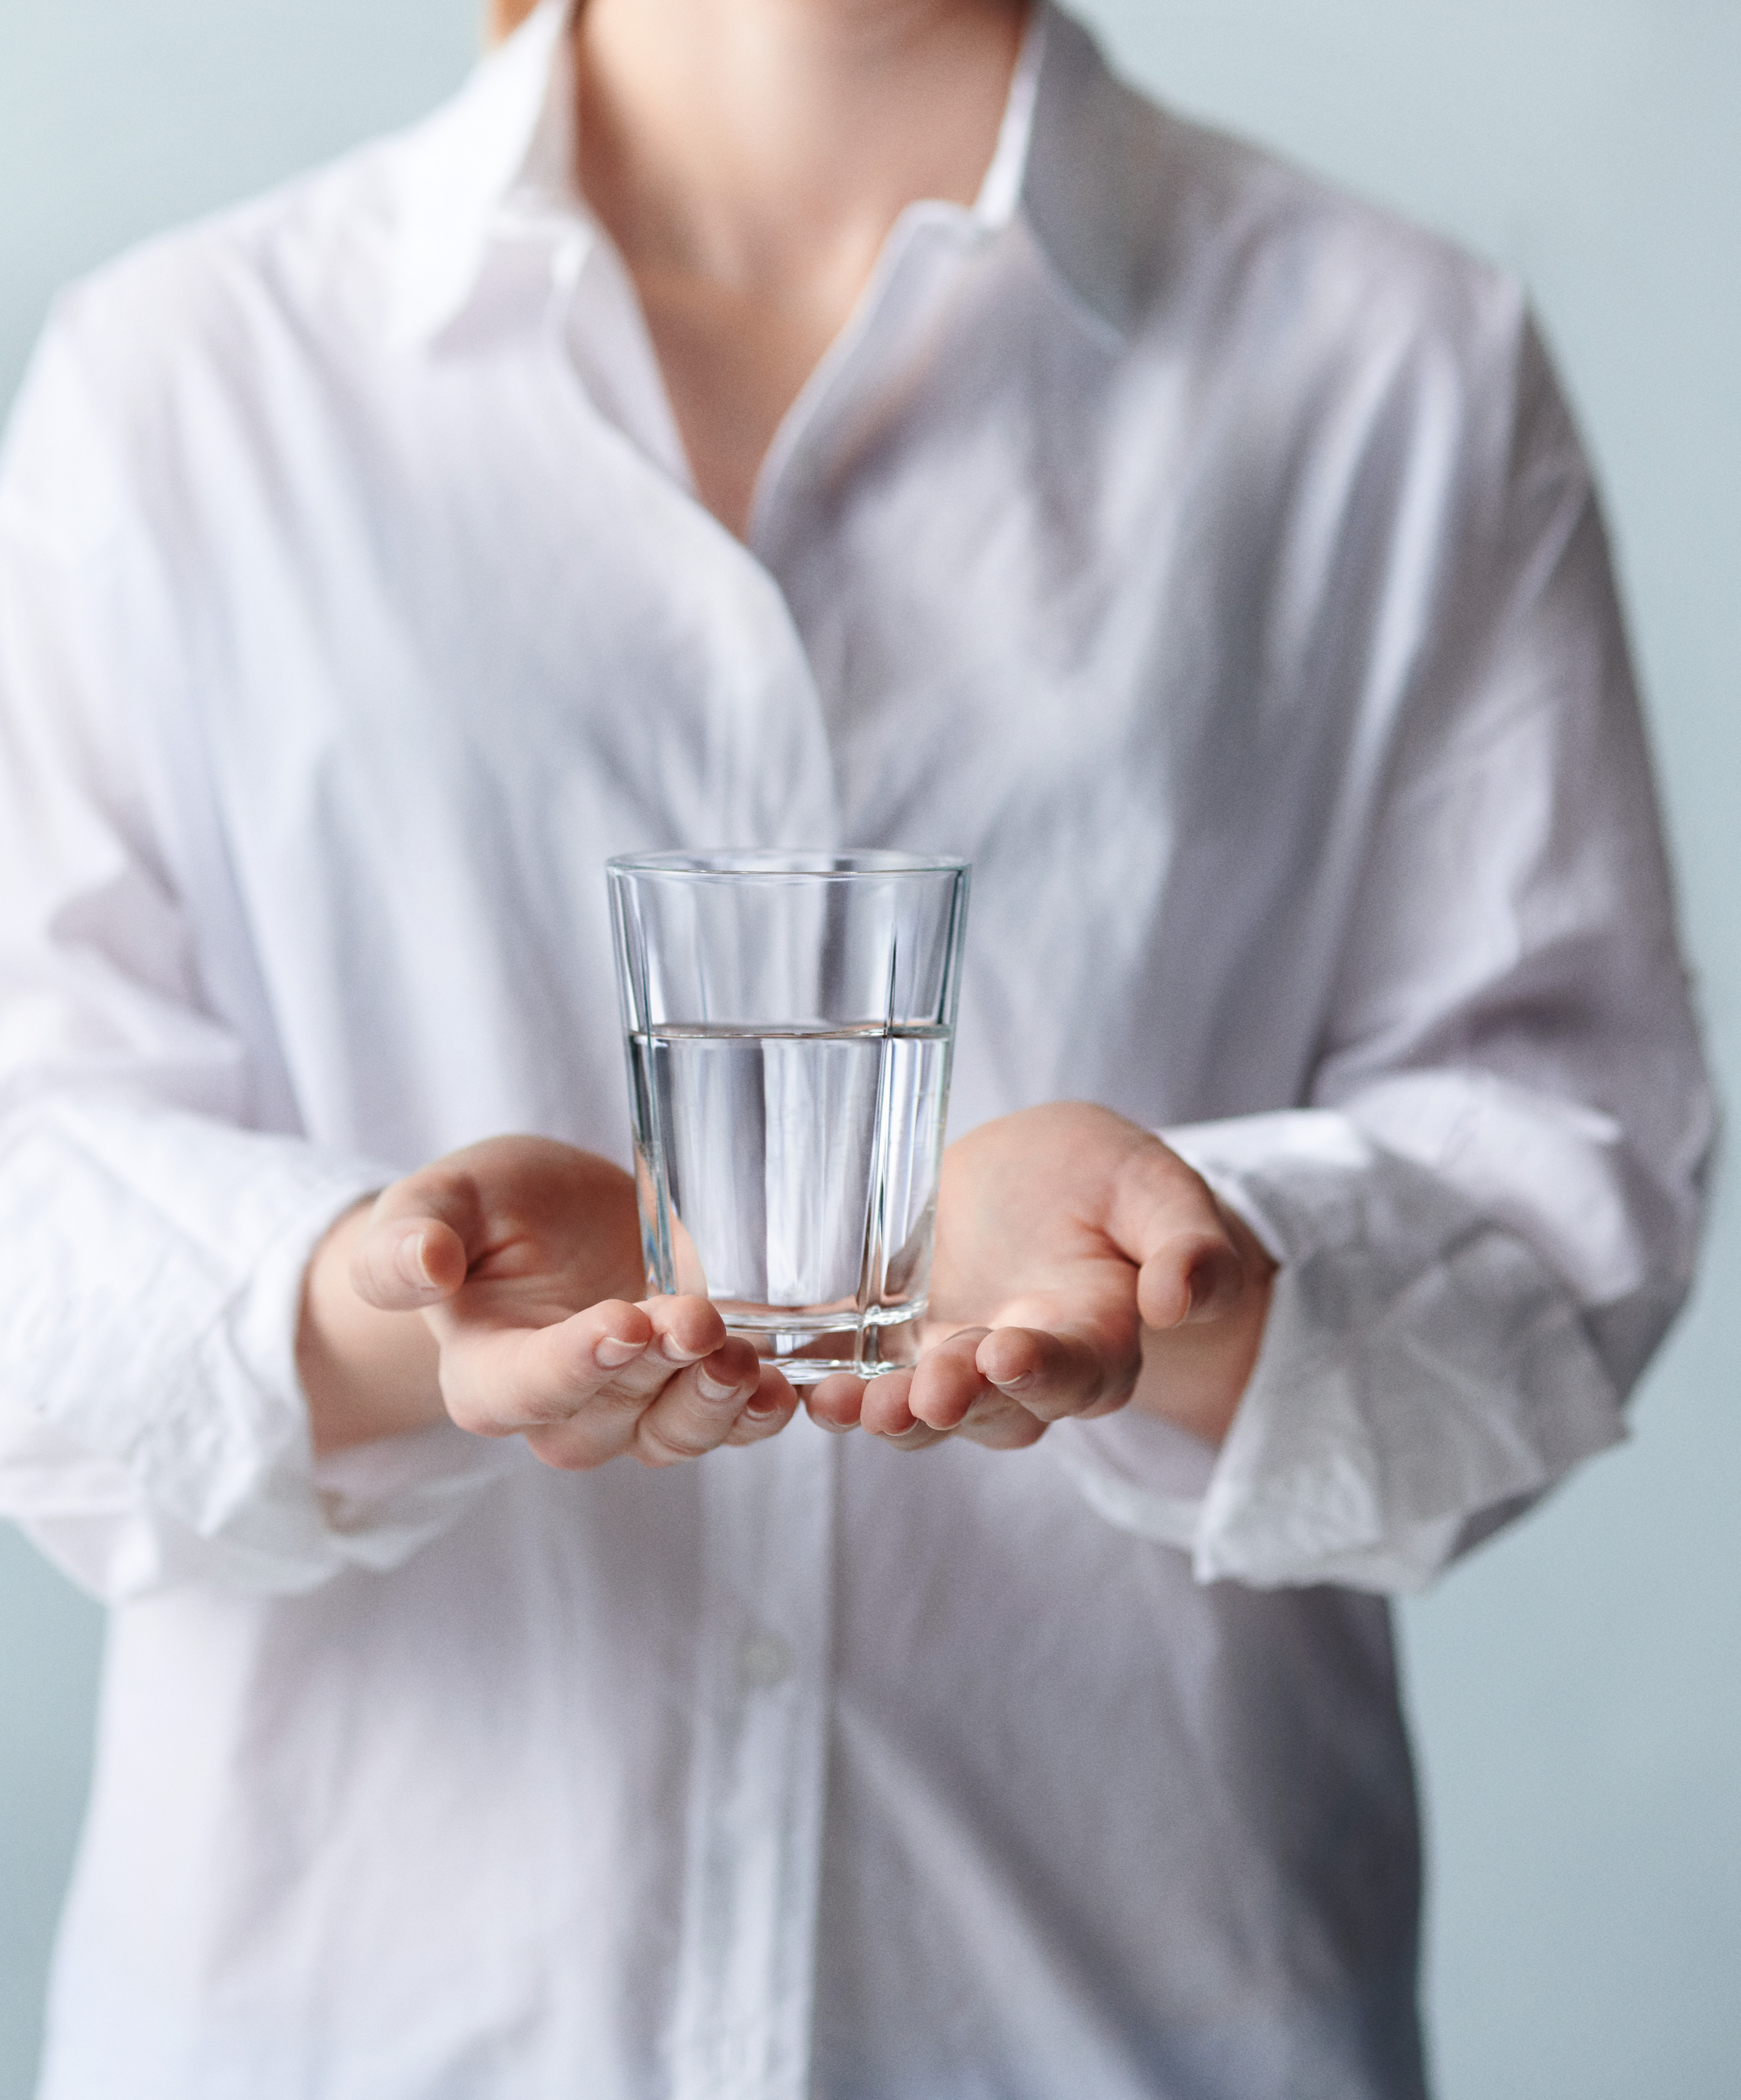 Vandglas fra Rosendahl, Grand Cru, i hænderne på kvinde i hvid skjorte